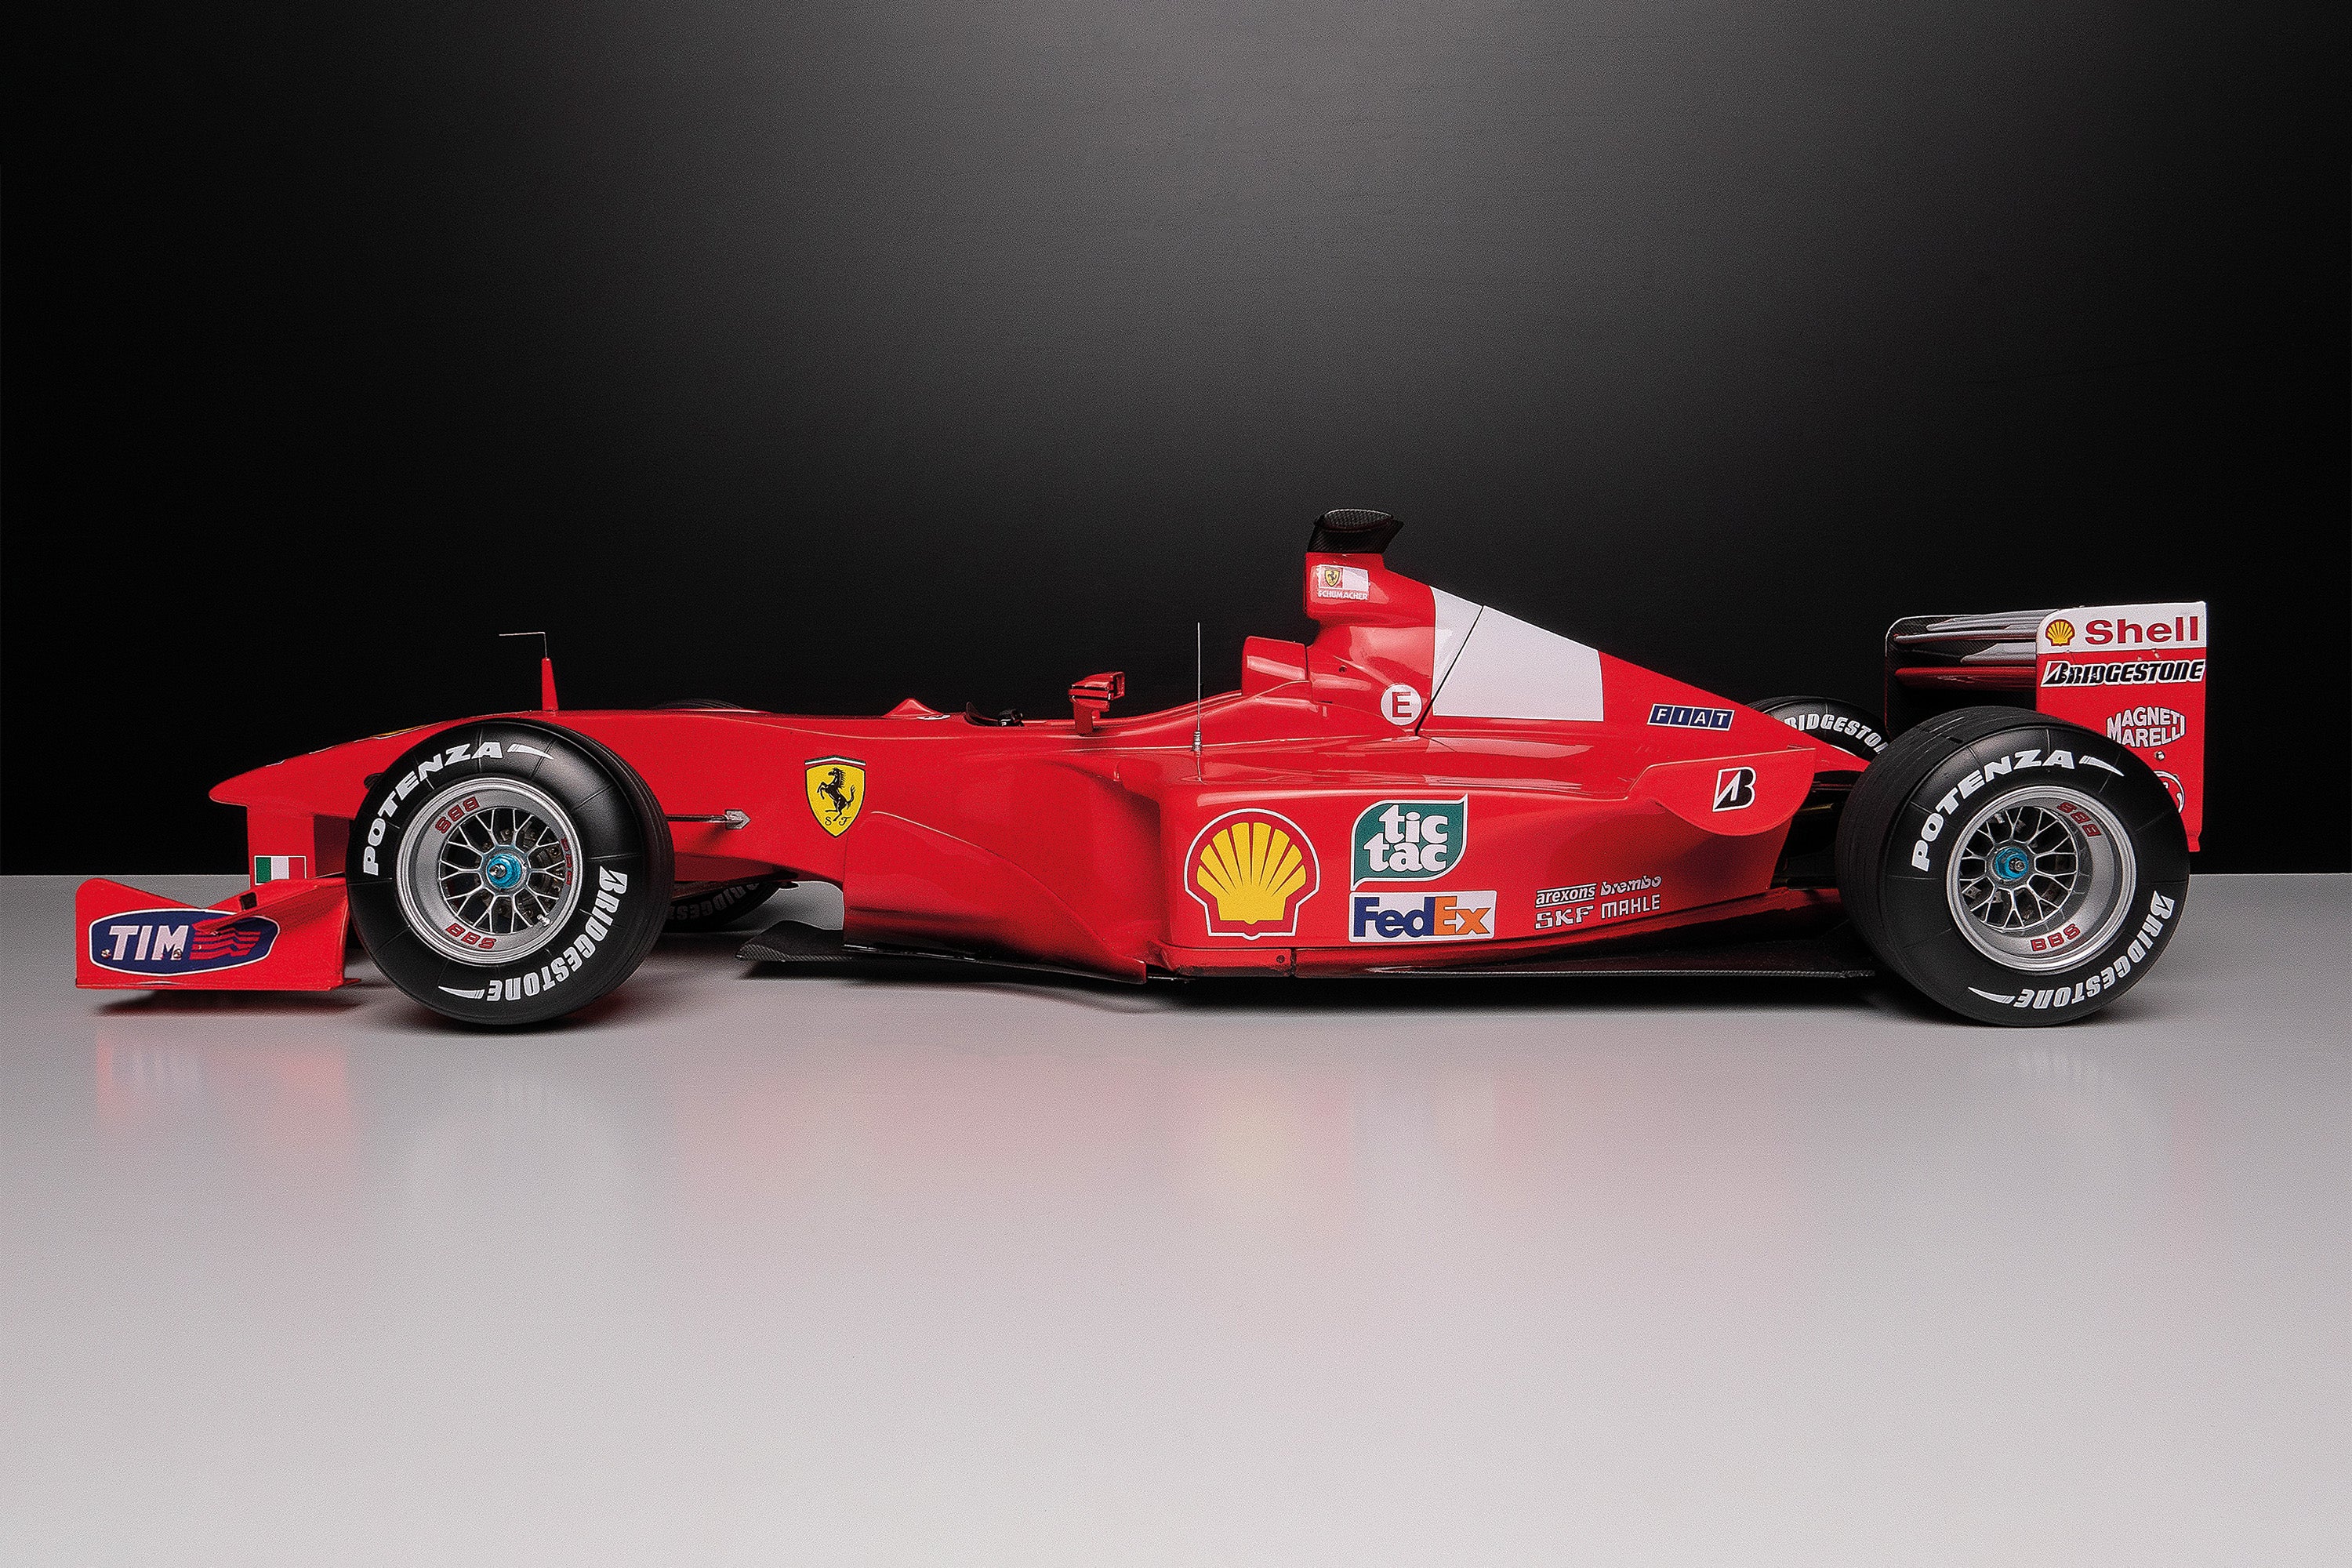 Ferrari F1-2000 - Super Detailed Edition – Amalgam Collection